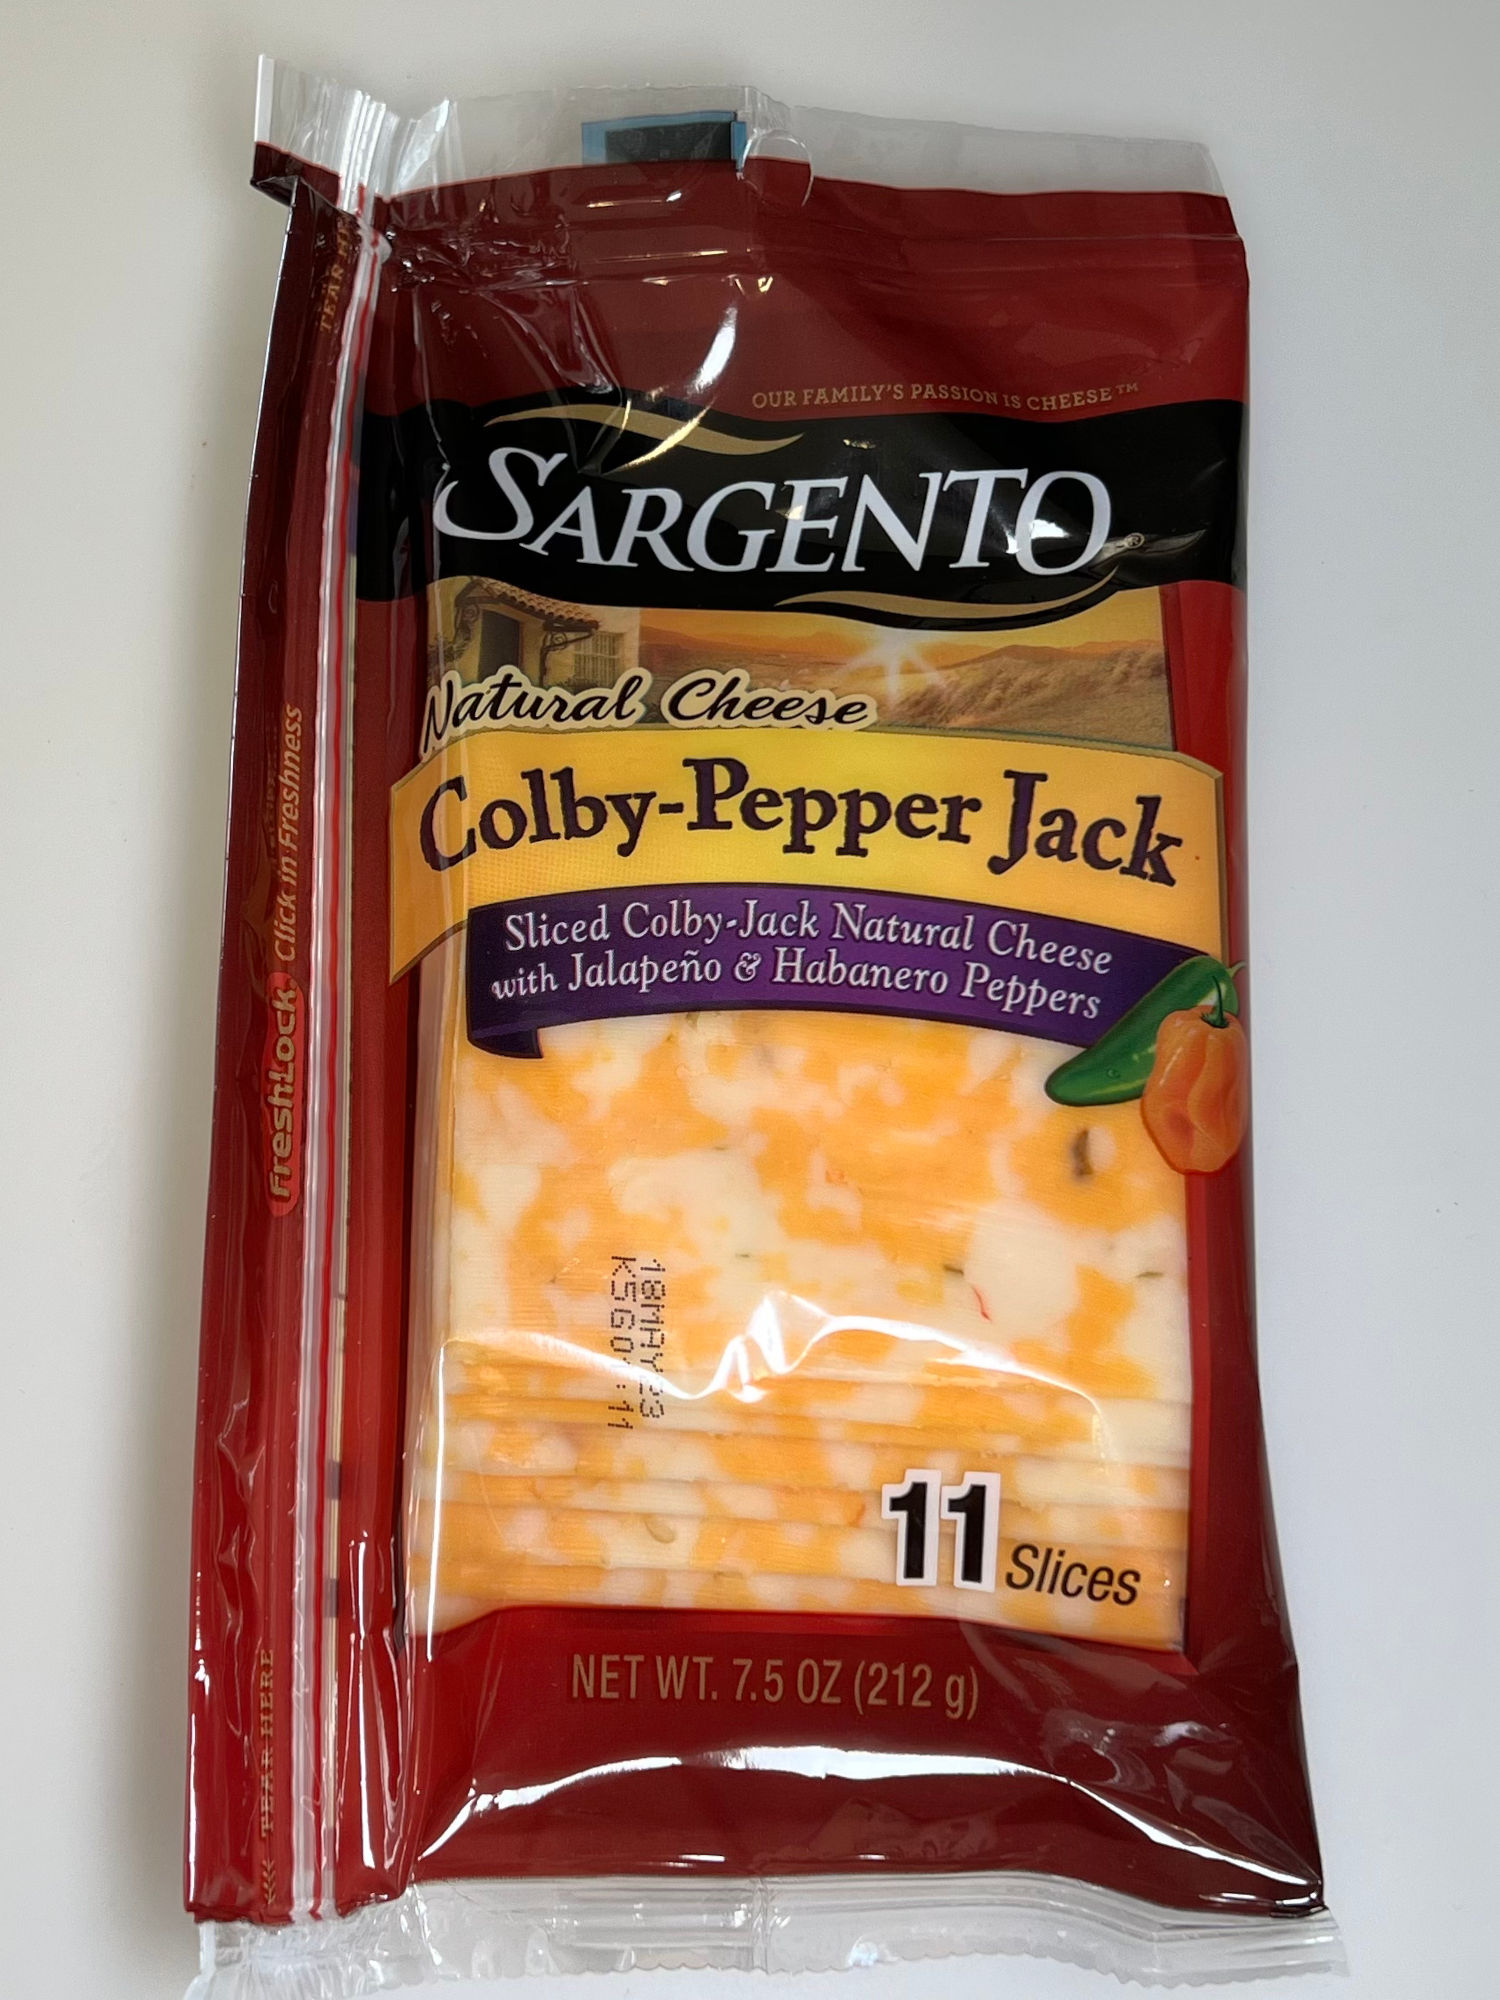 Colby-Pepper Jack Sargento Sliced